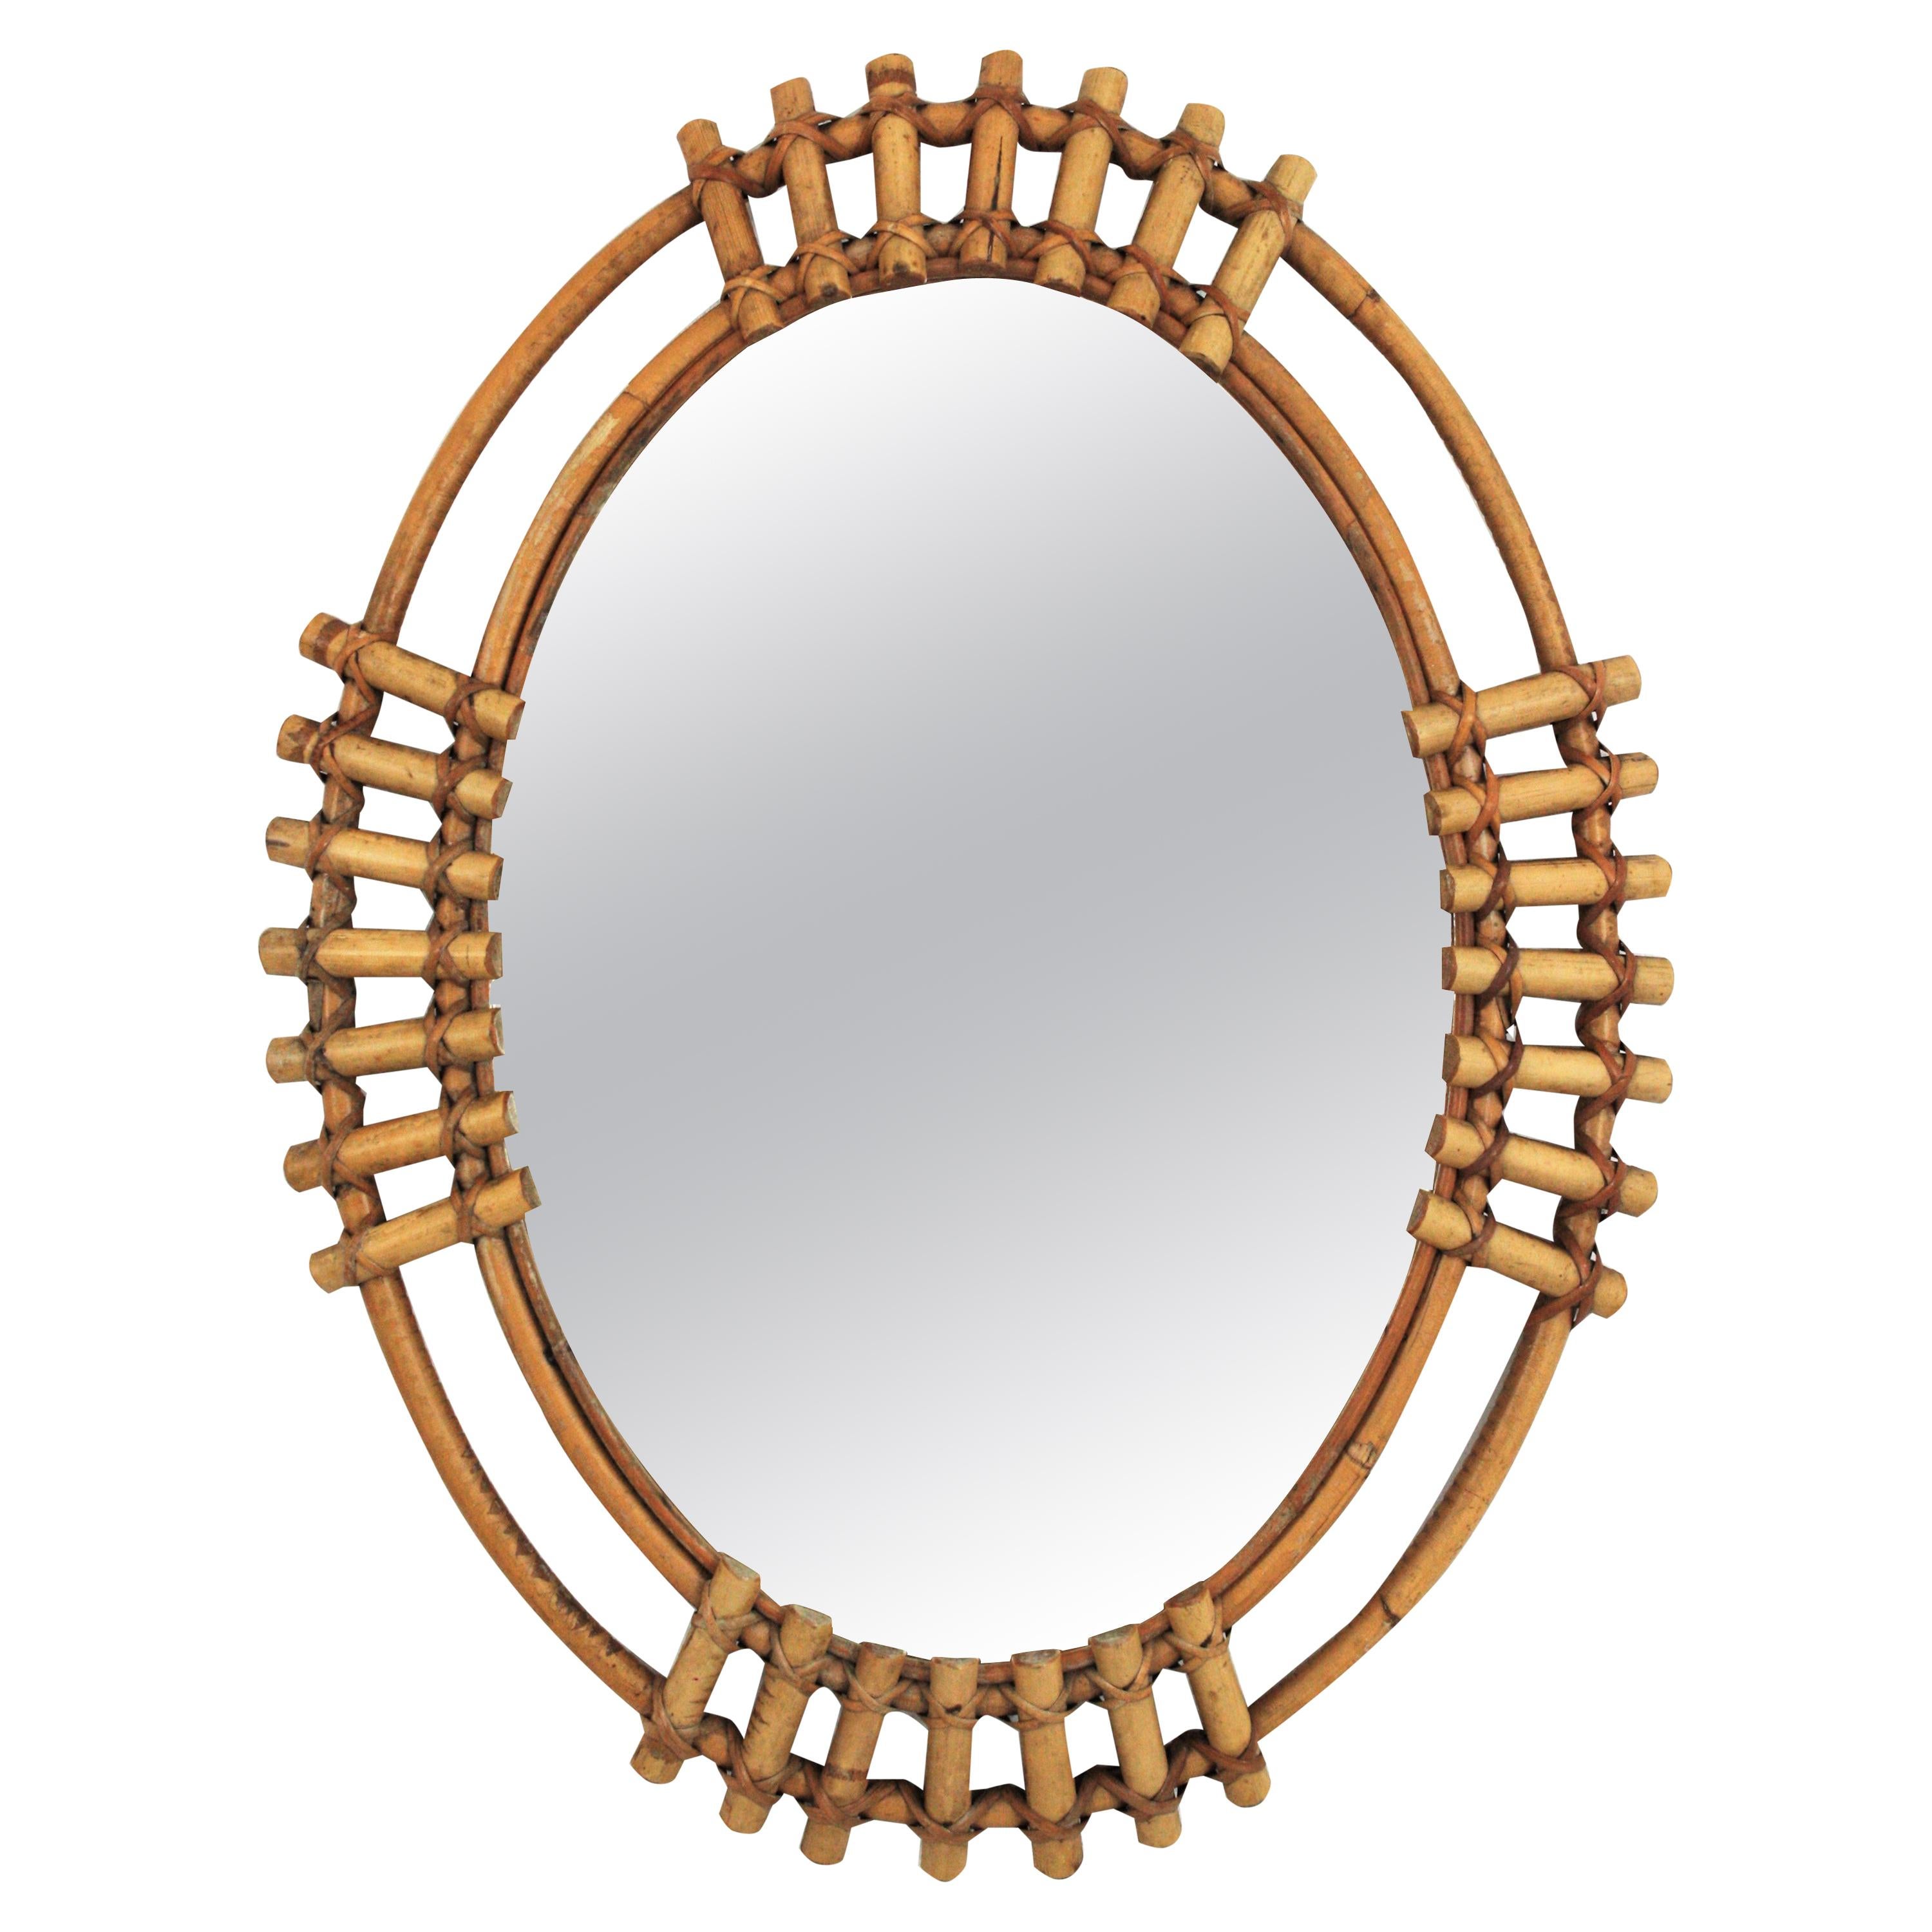 Spanish Bamboo Oval Sunburst Mirror, 1960s